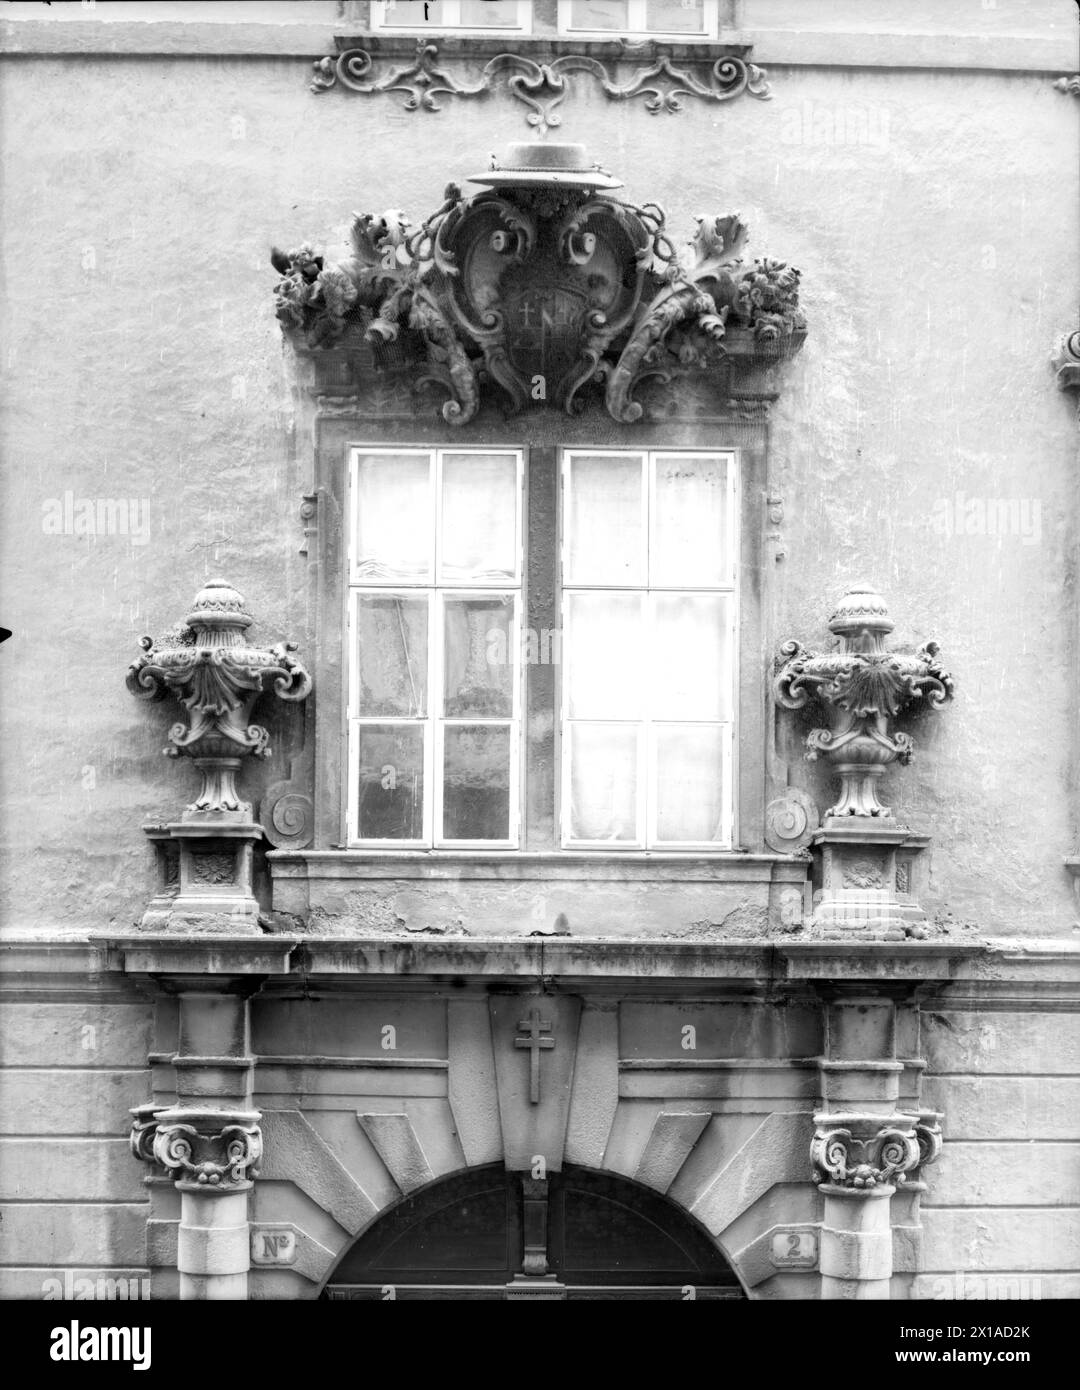 Wien 1, Erzbischofspalais, supraporte mit Bischofsmitre frontal aus dem 1. Stock des gegenüberliegenden Hauses Nr. 1, 1898 - 18980101 PD0743 - Rechteinfo: Rights Managed (RM) Stockfoto